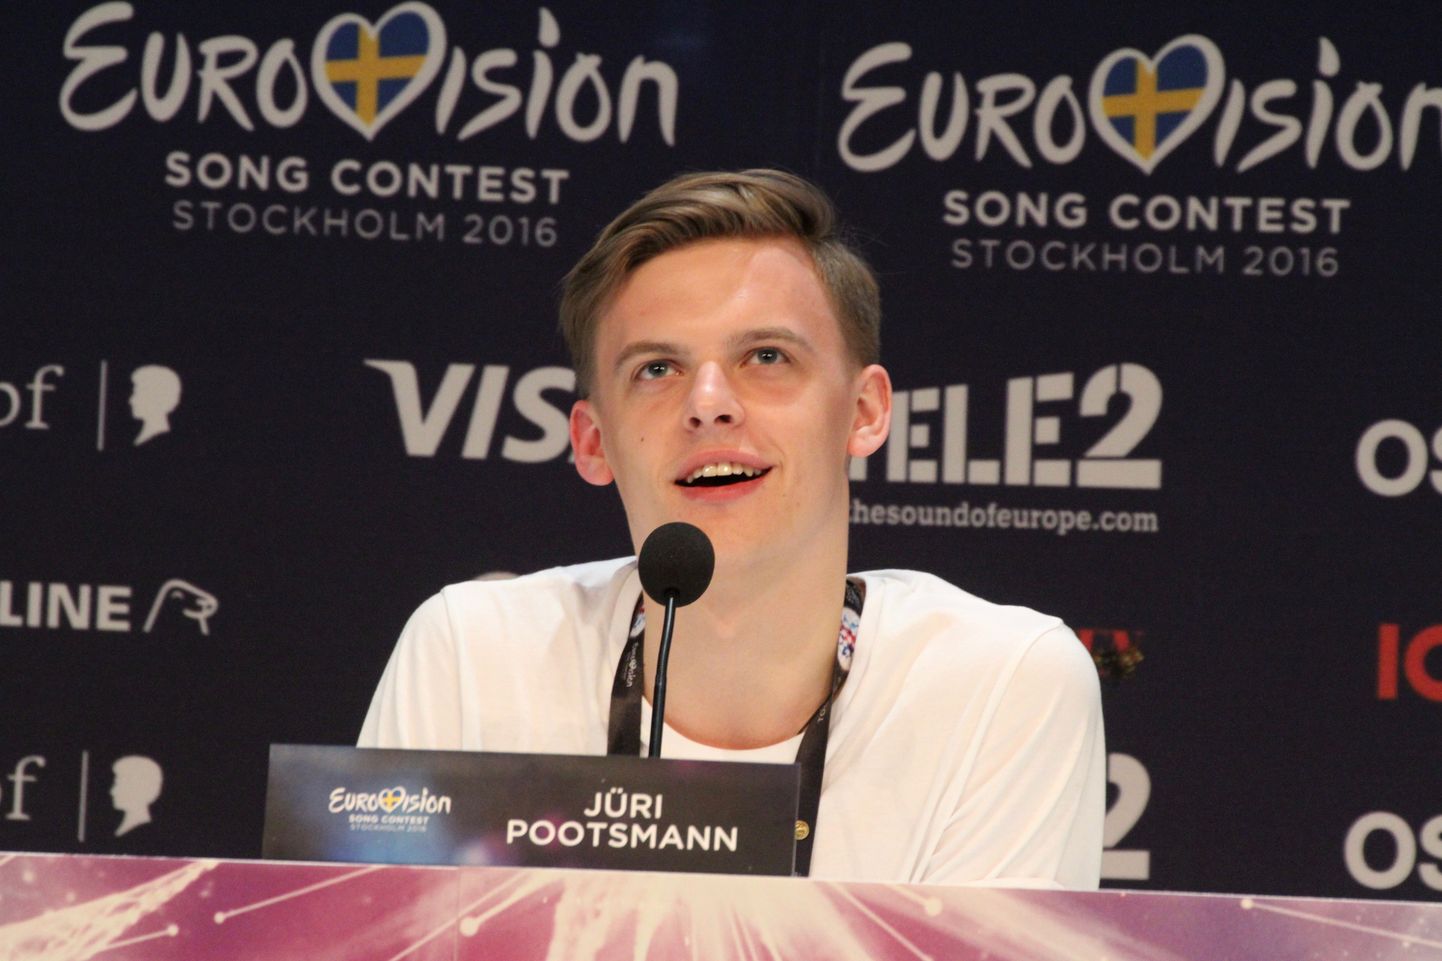 Eurovisiooni fännide seas on Jüri Pootsmann saanud endale uue hüüdnime, milleks on Mr.Bond